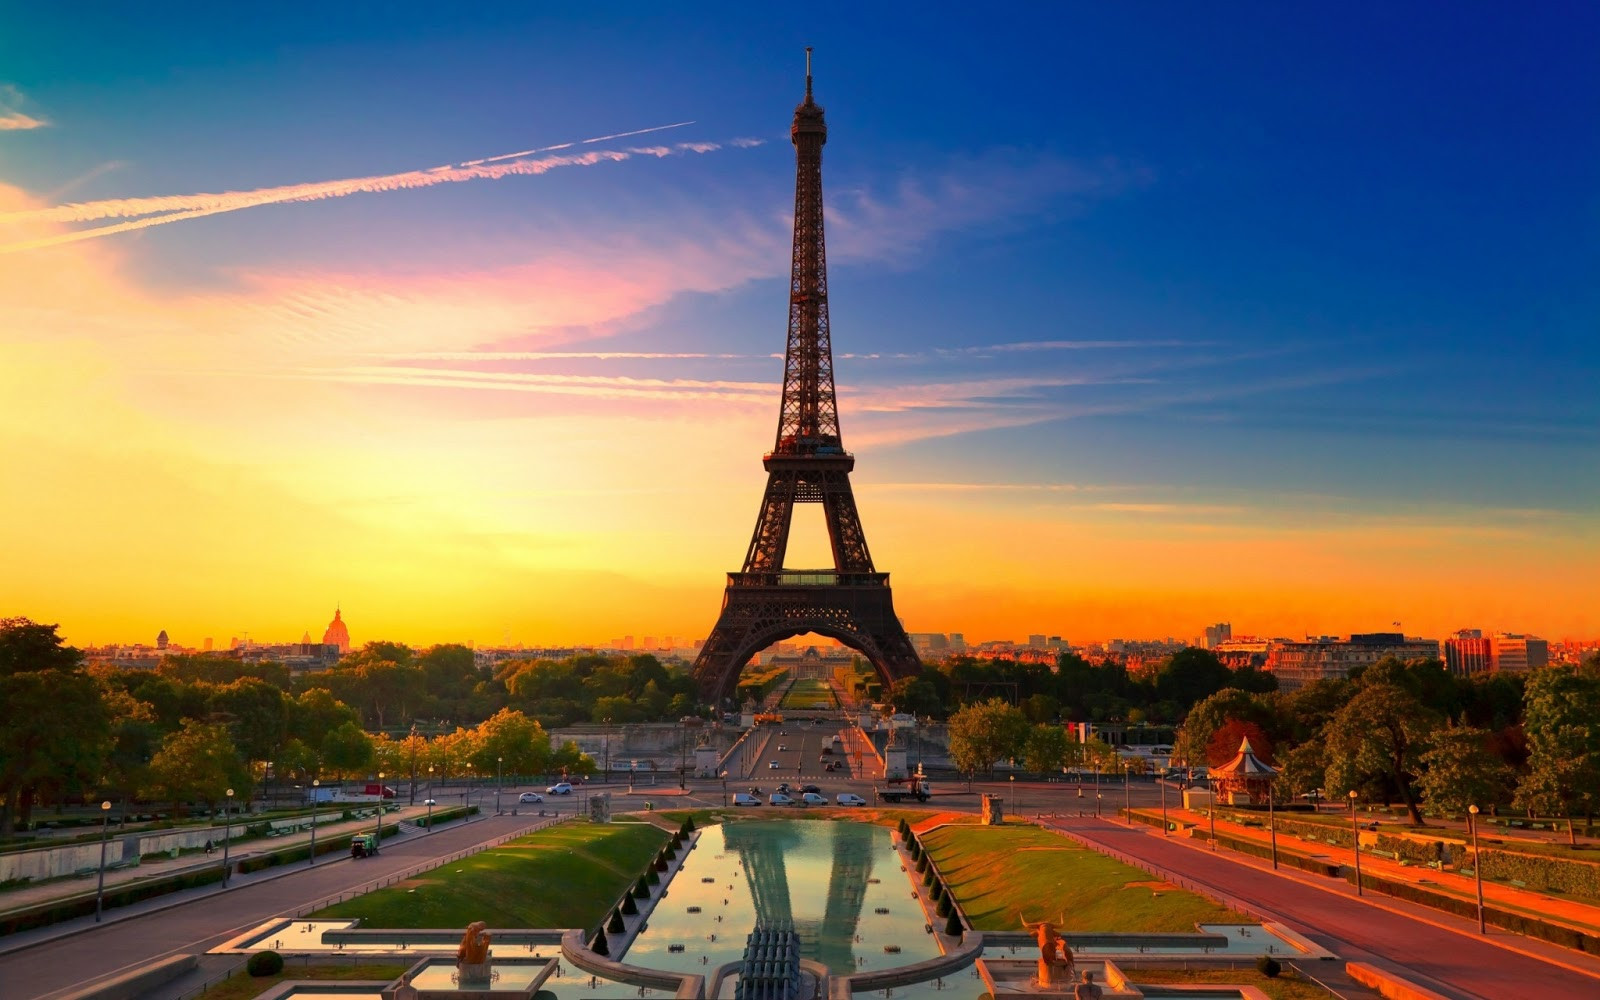 20 điểm du lịch nổi tiếng ở Paris bạn không nên bỏ qua khi đi du lịch Pháp - Ảnh 20